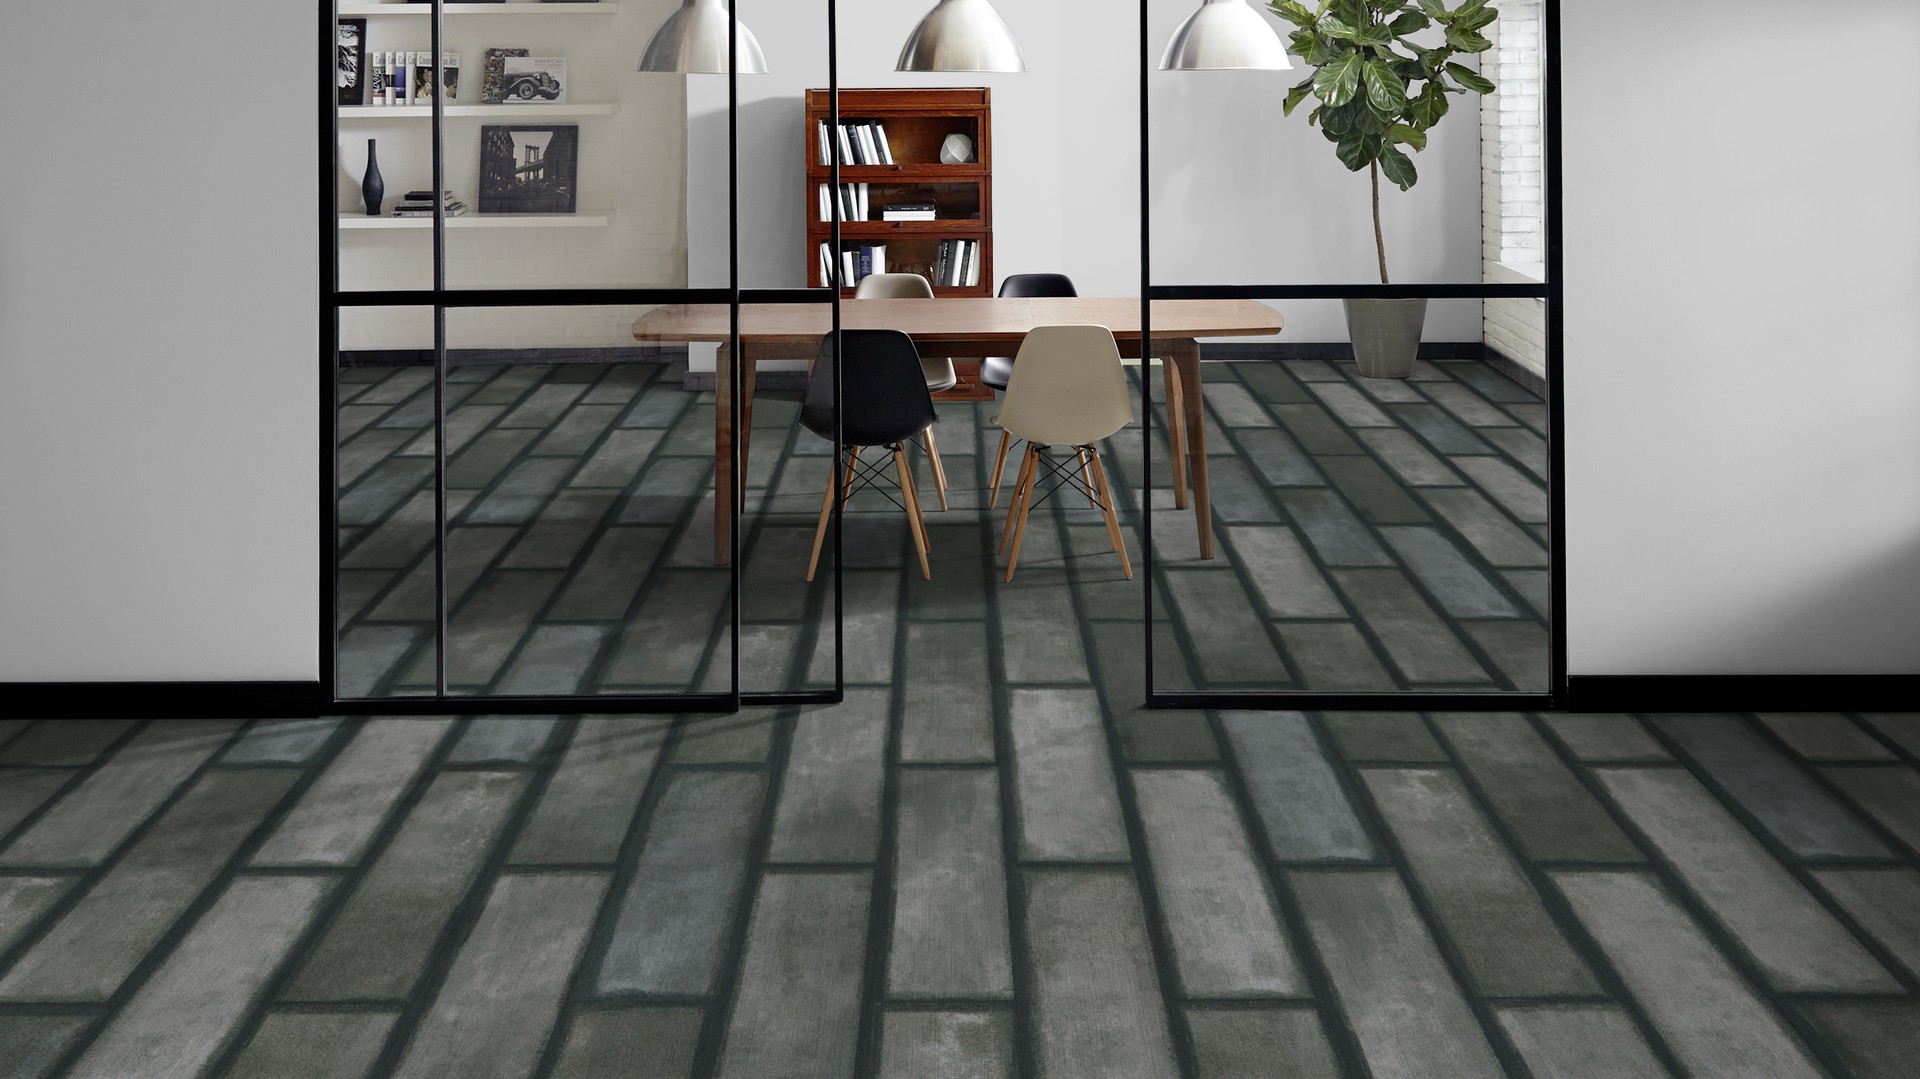 Milliken S Modular Carpet Tiles Solve, Milliken Carpet Tile